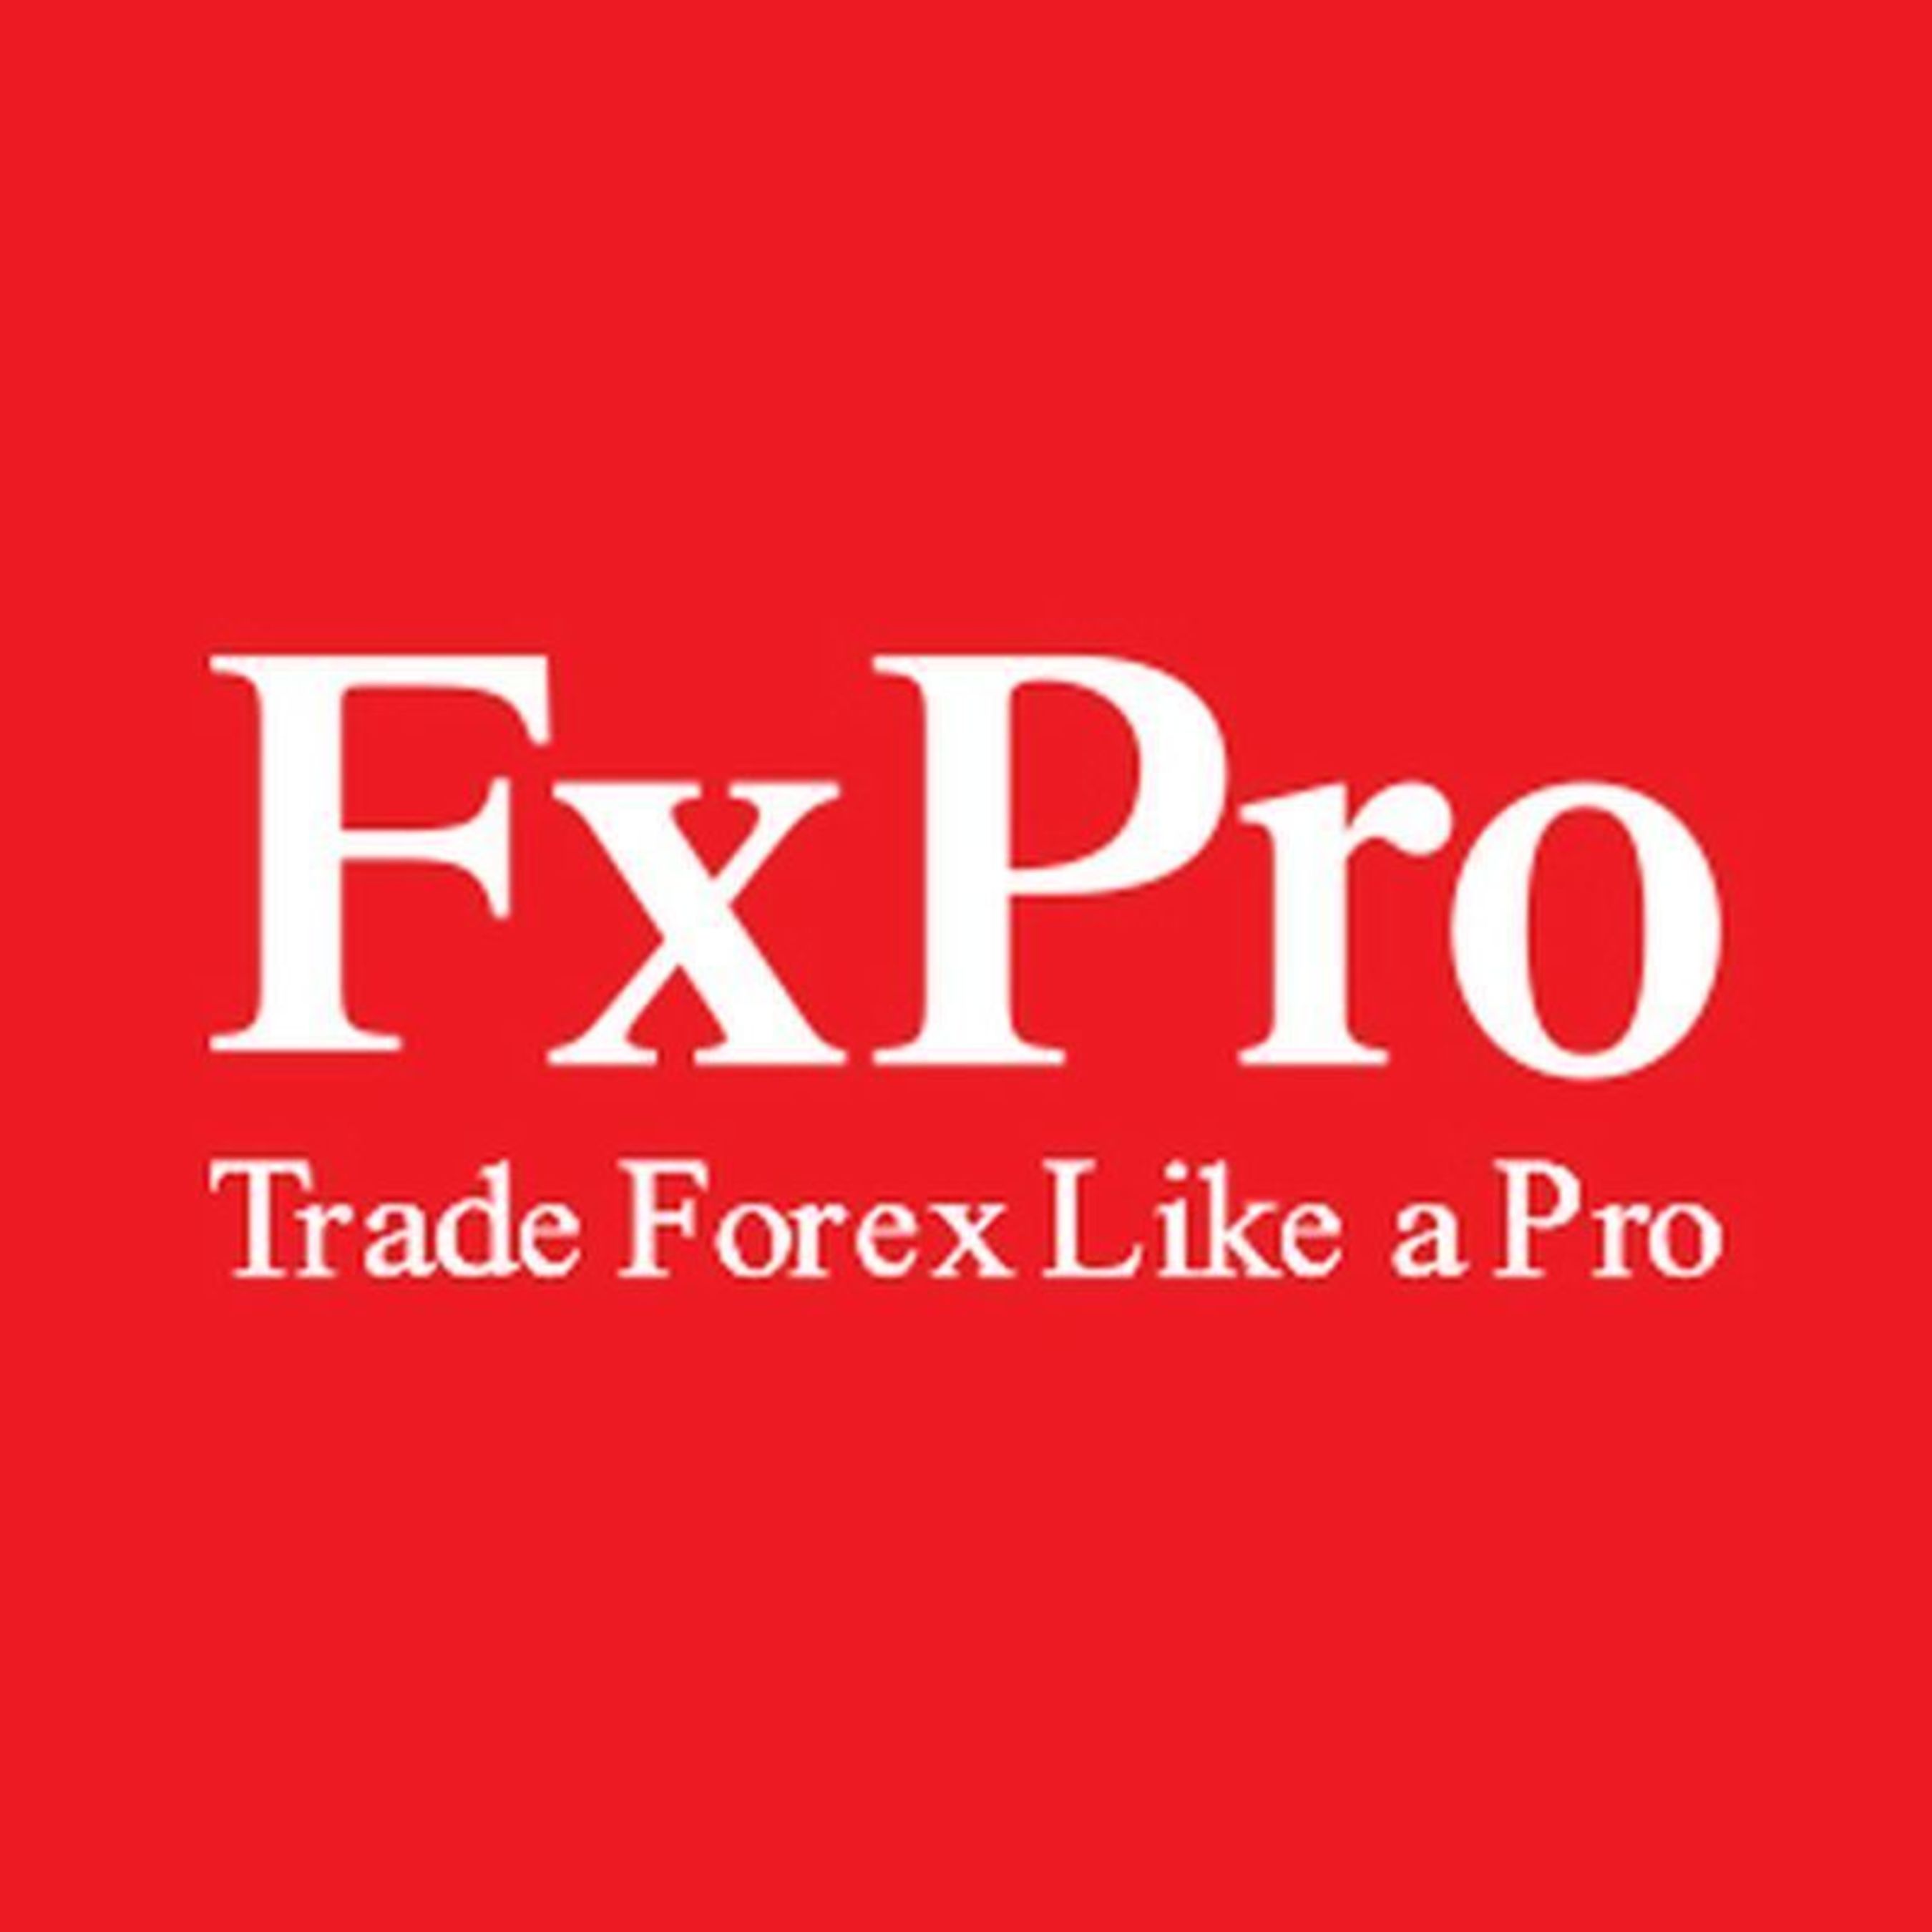 FxPro logo (PRNewsFoto/FxPro)